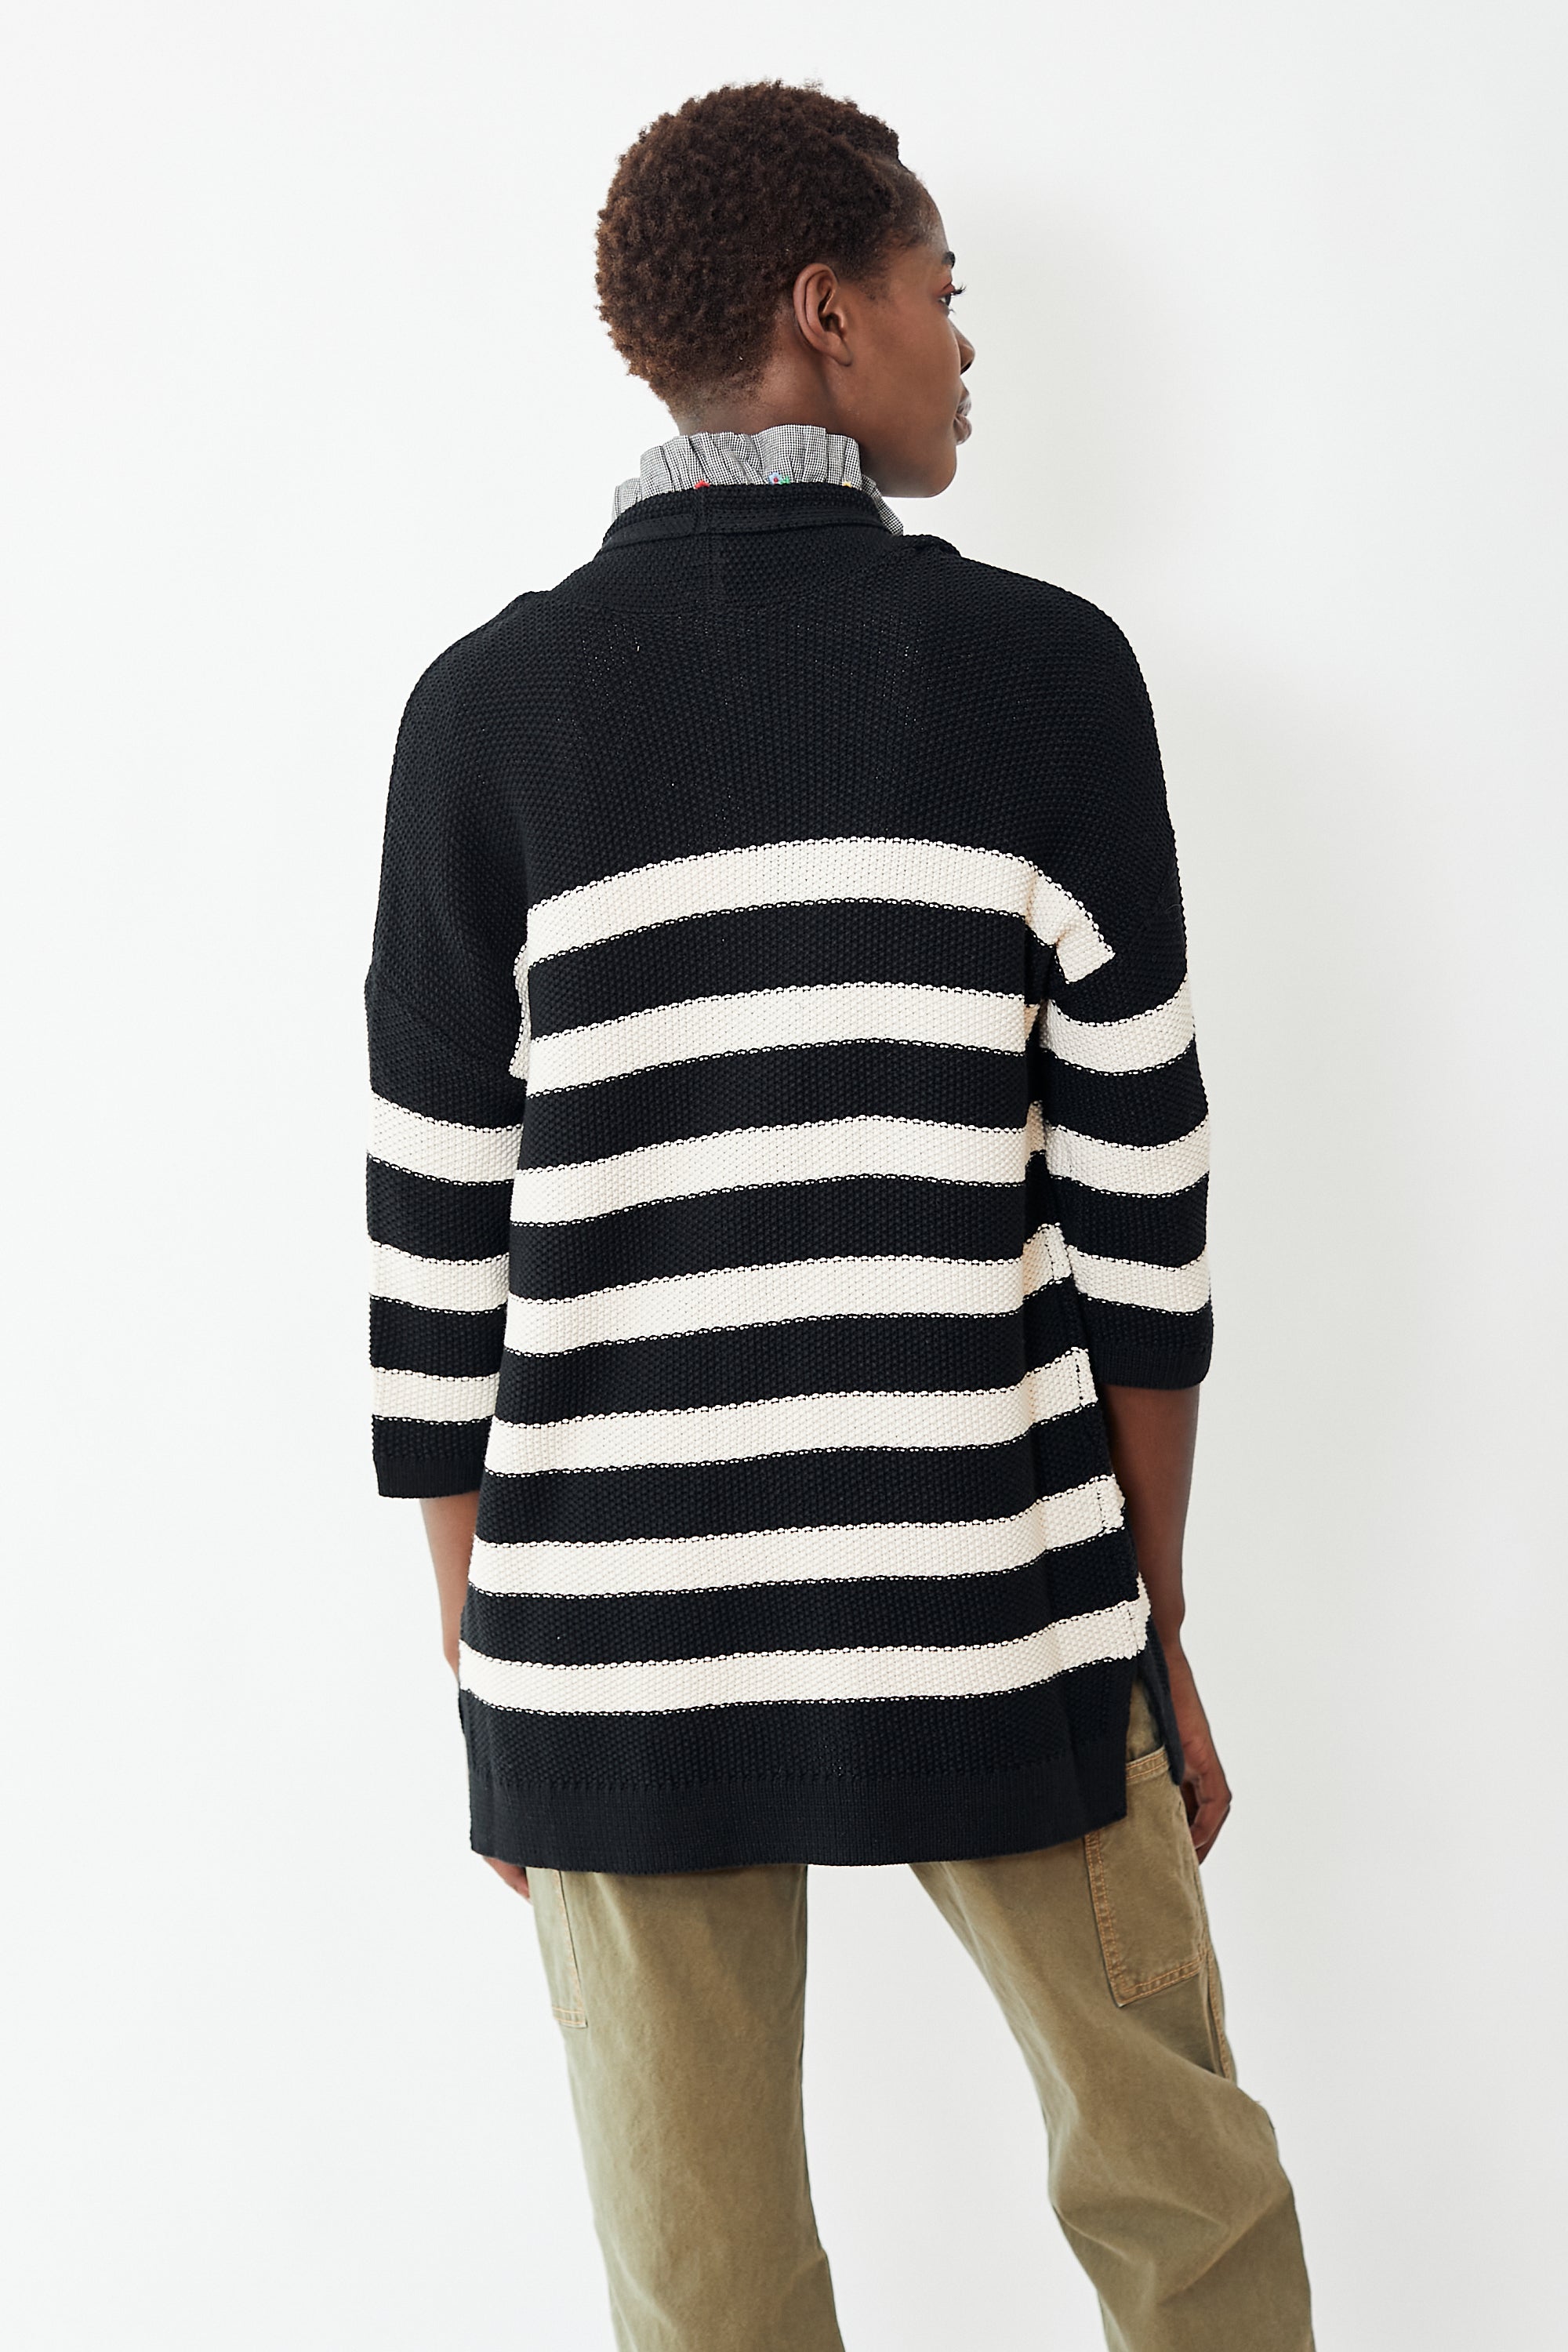 Lilla P Striped Open Cardigan Sweater